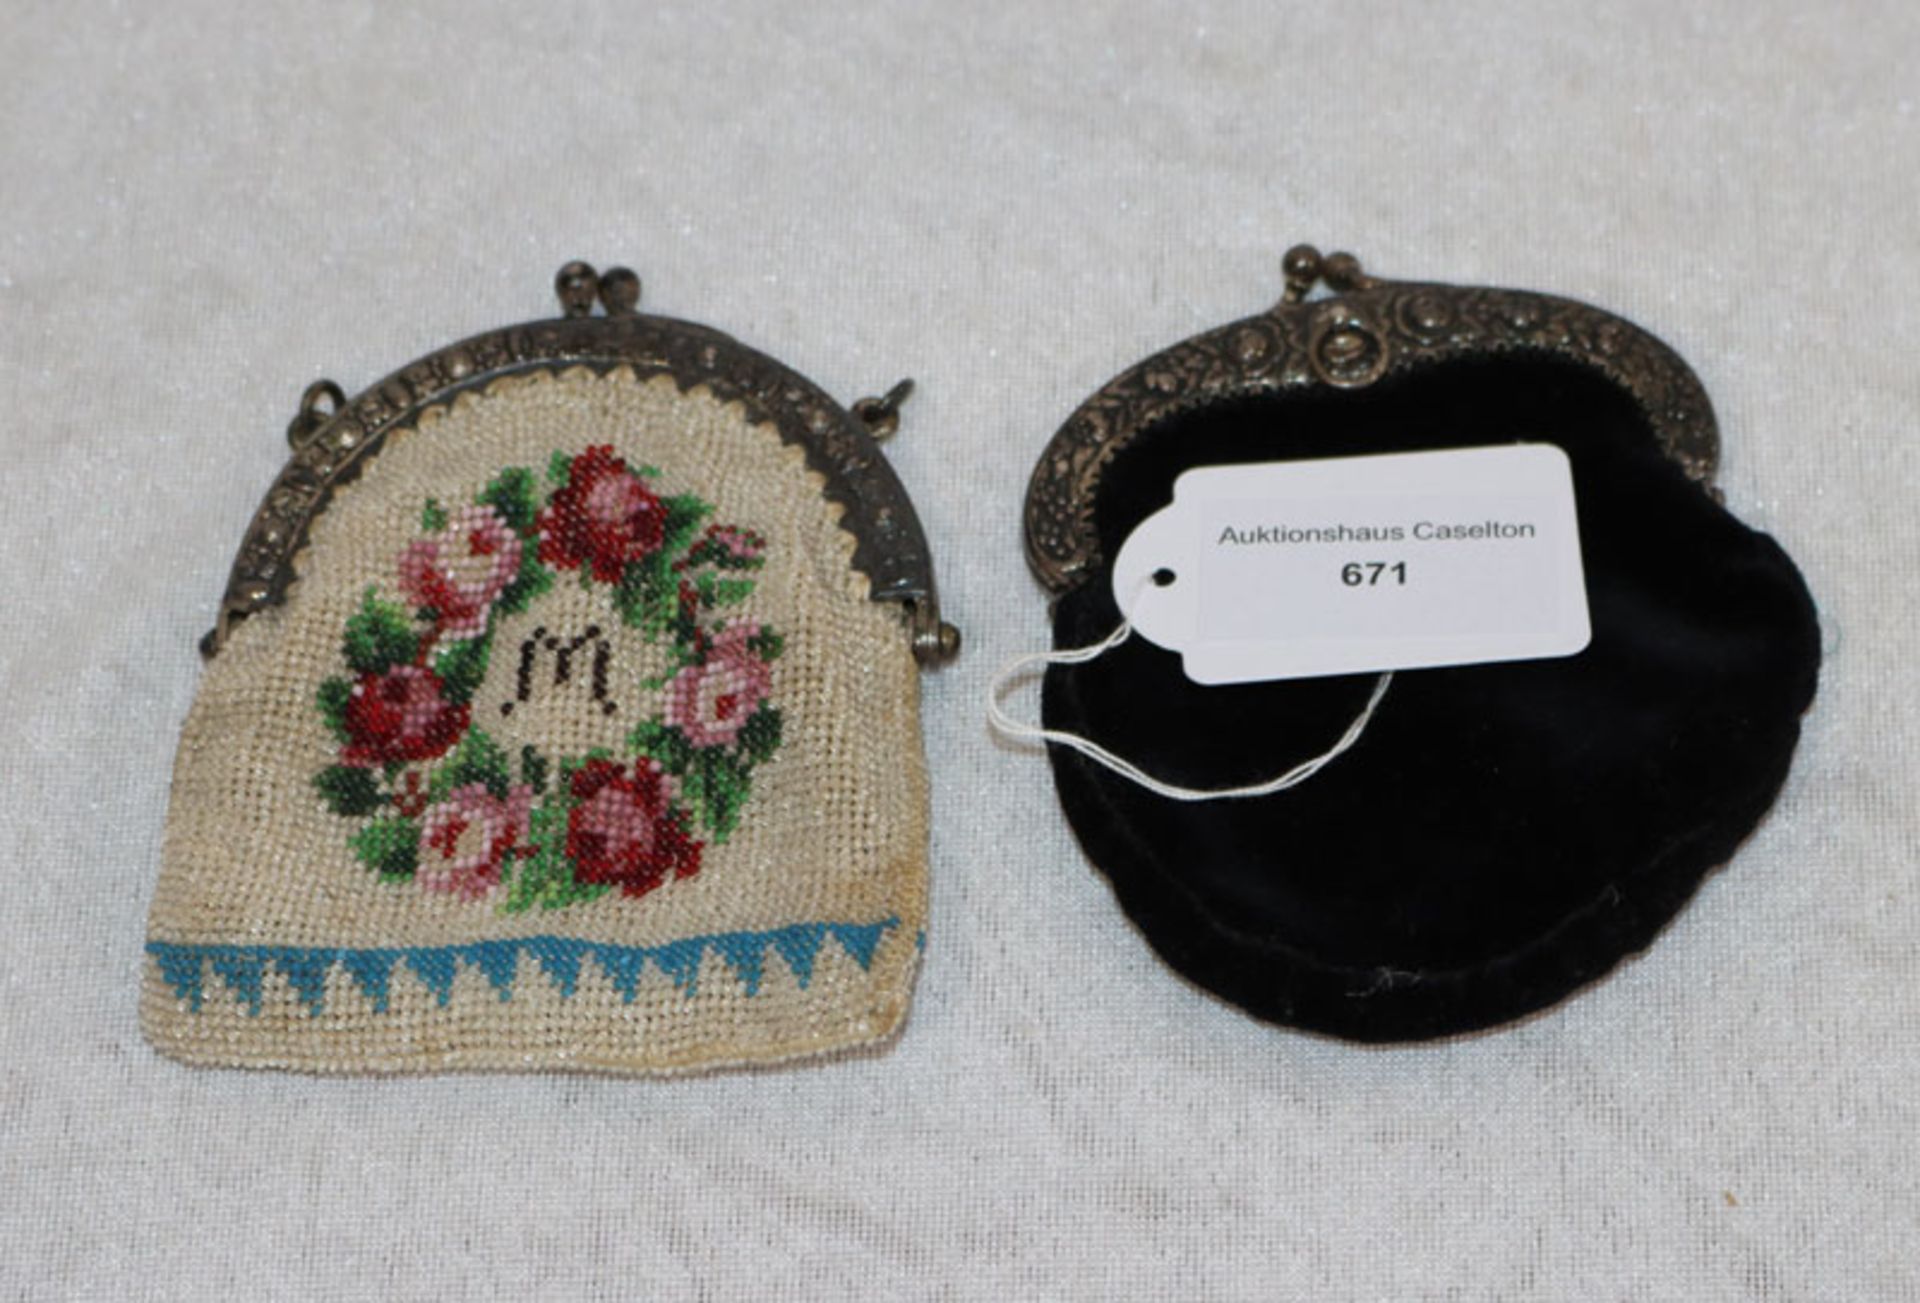 Perlentäschchen mit Rosendekor und Monogramm A M mit Metallbügel, sowie schwarzes Samttäschchen